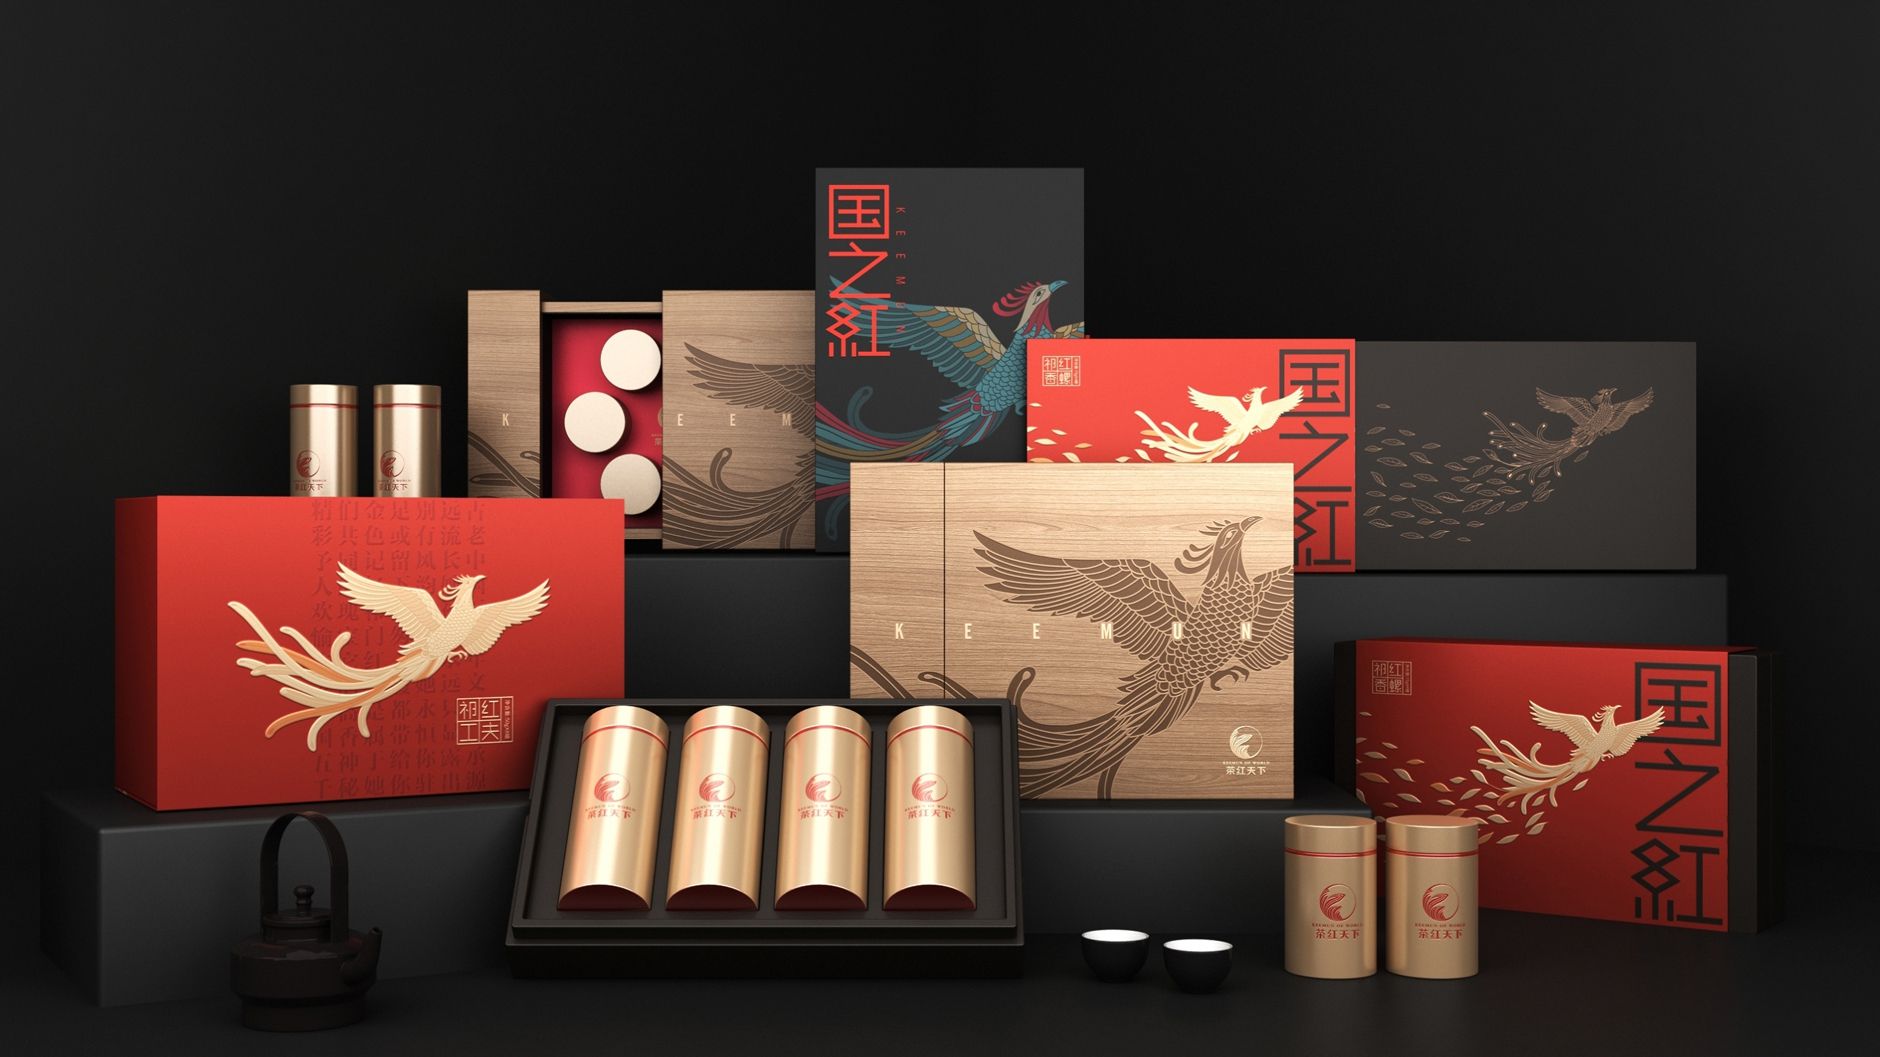 茶叶礼盒包装设计 高端茶叶包装设计 茶叶系列包装设计 飞特网 原创茶叶包装设计